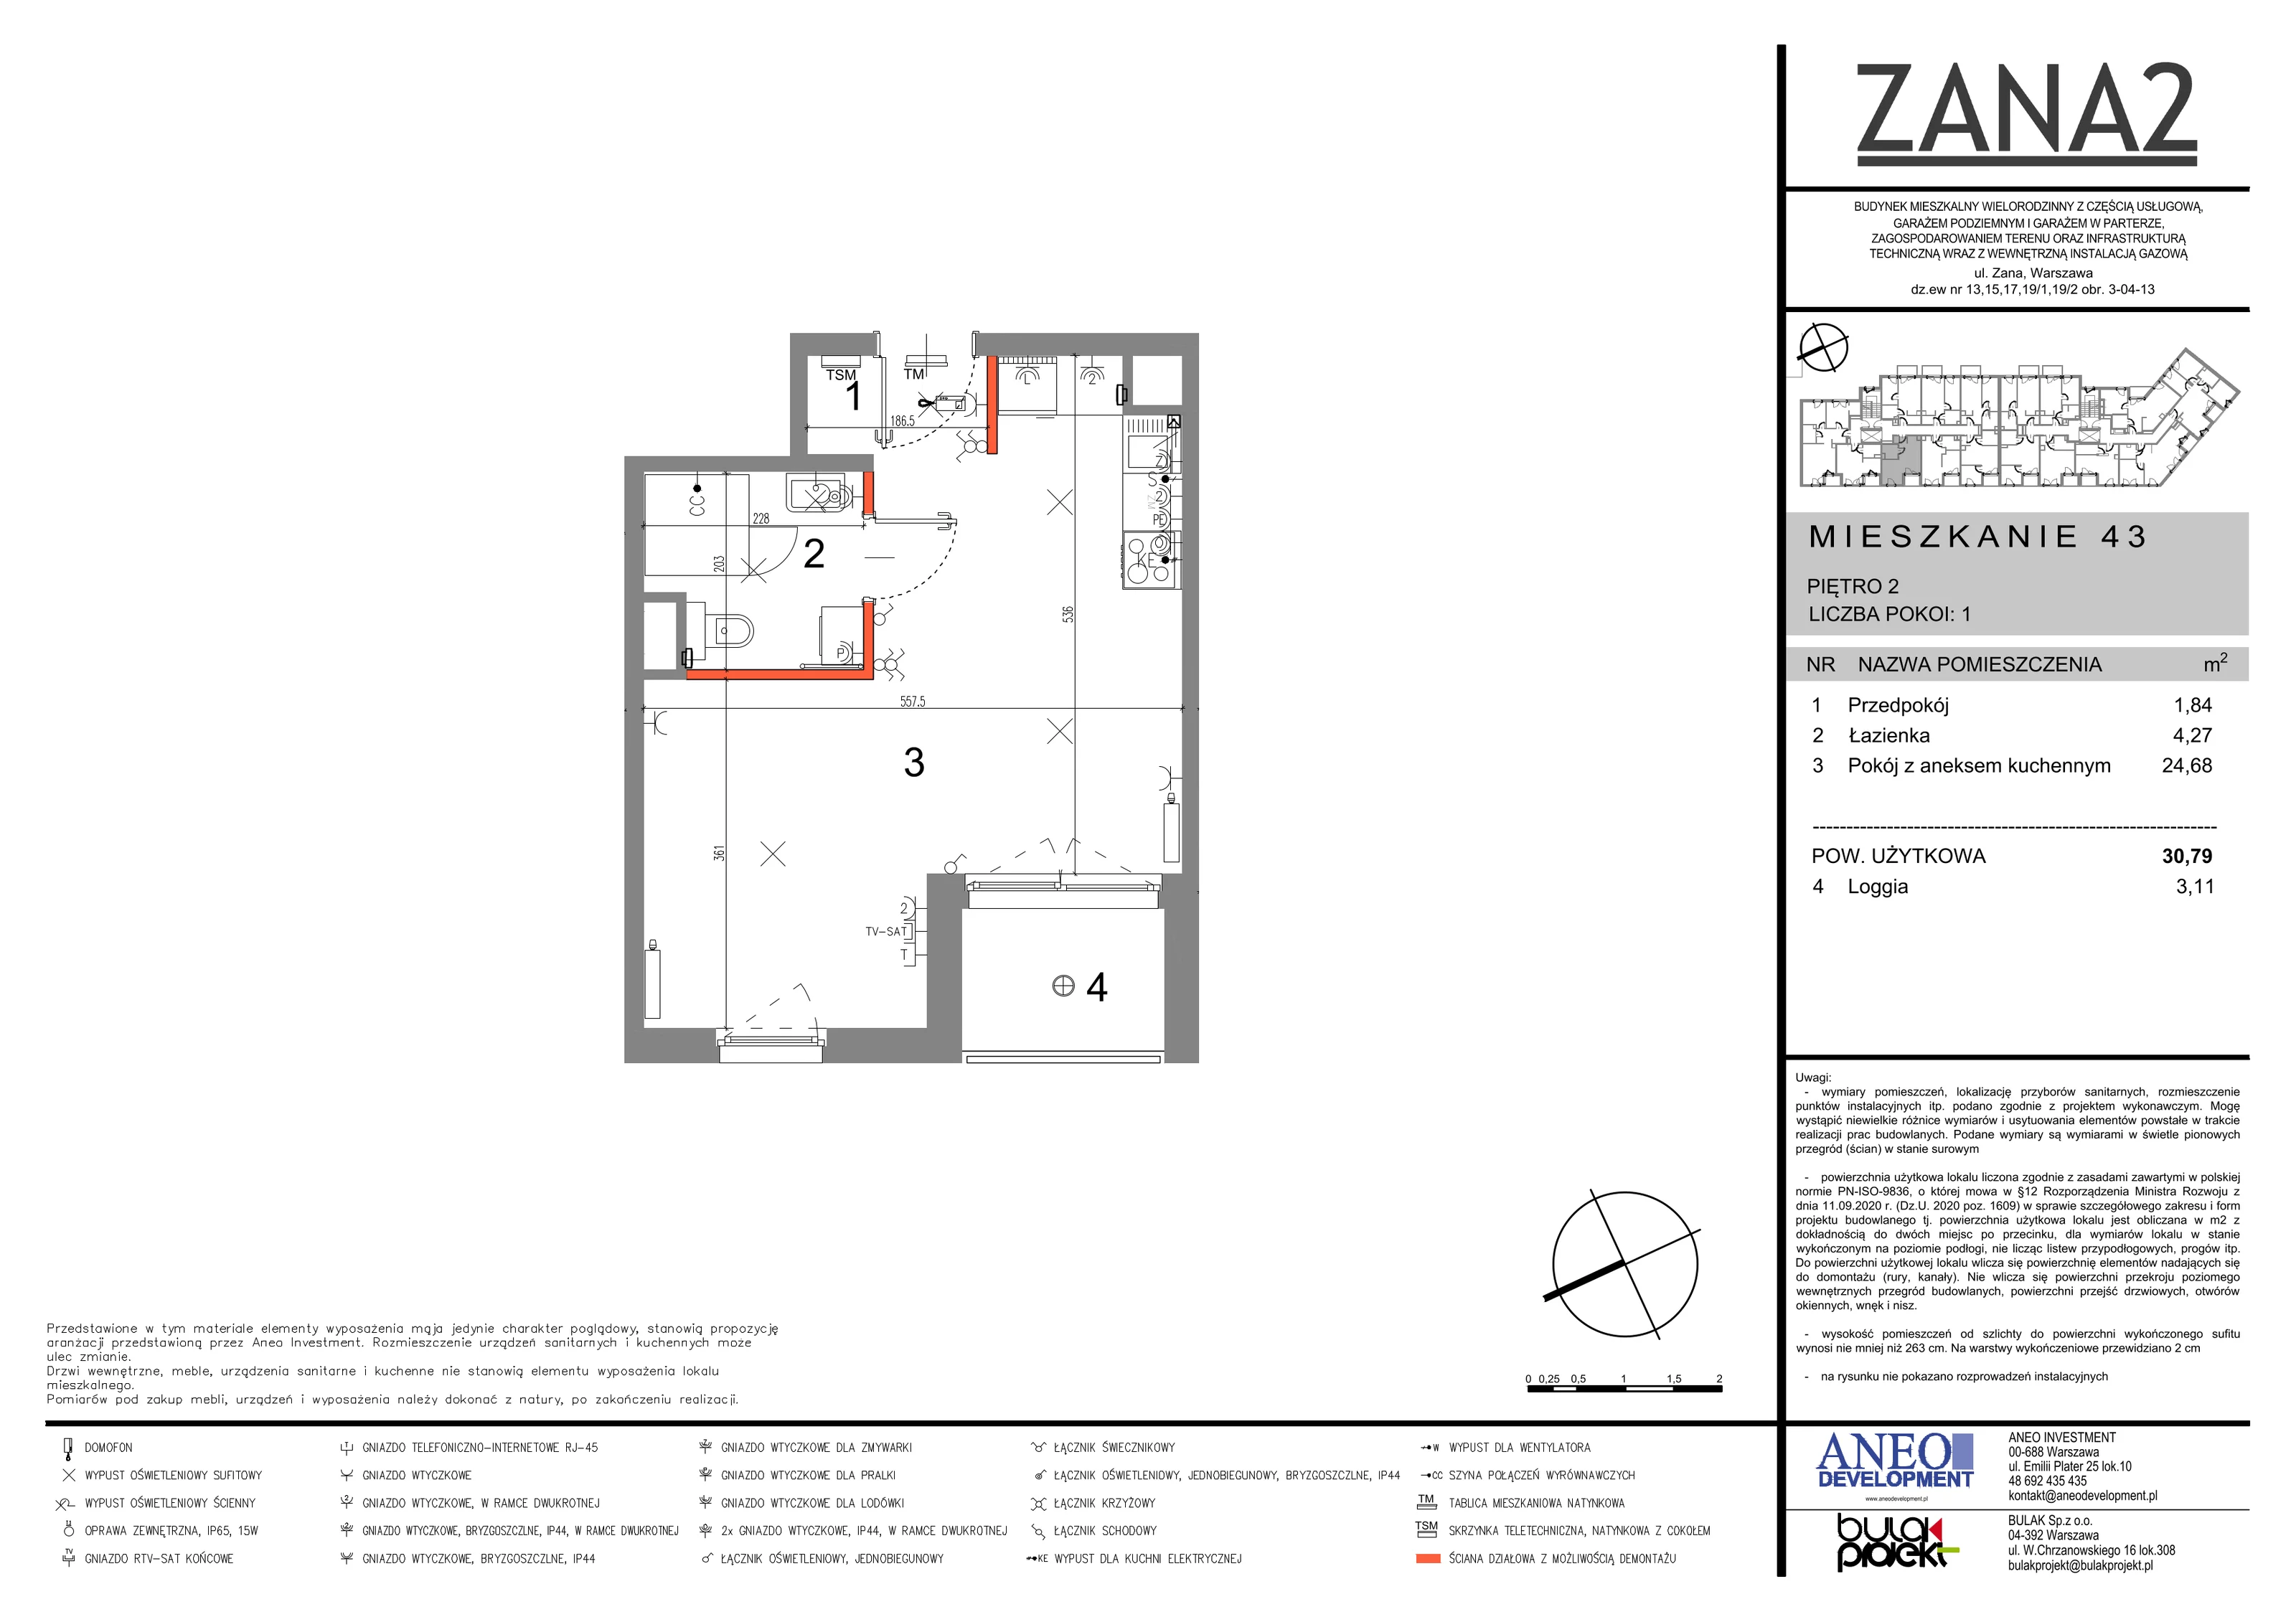 Mieszkanie 30,79 m², piętro 2, oferta nr 43, Zana 2, Warszawa, Praga Południe, Gocławek, ul. Tomasza Zana